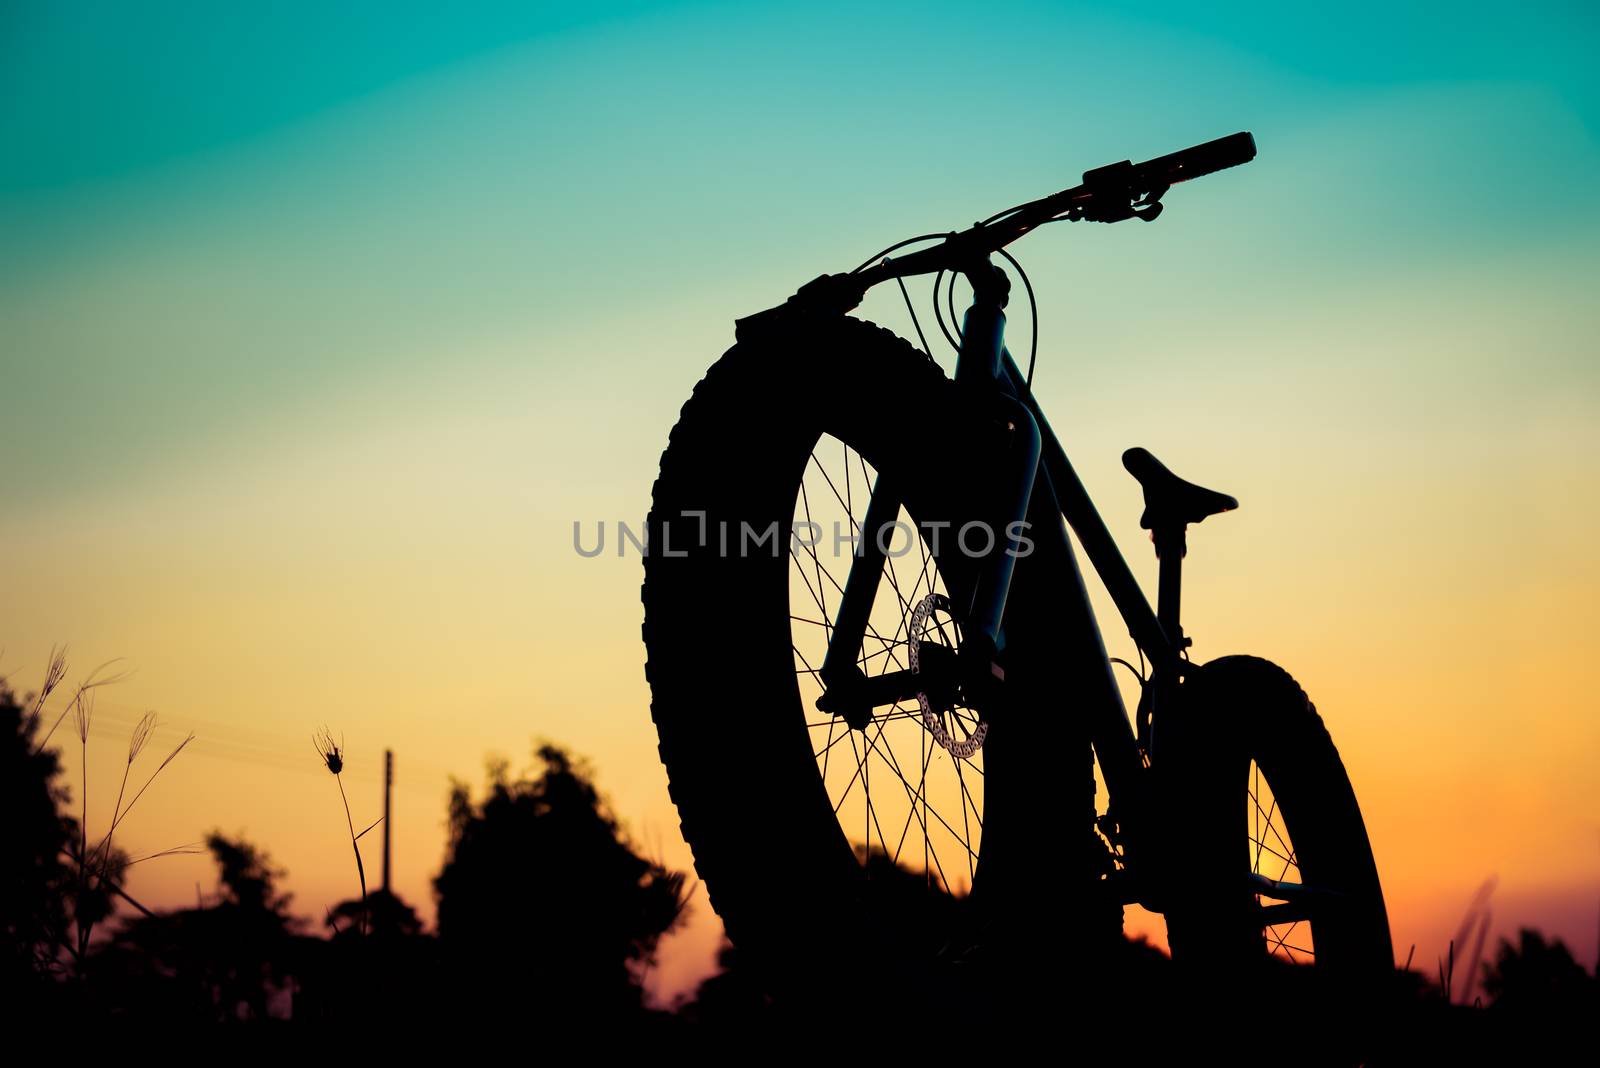 mountain bike silhouette on beautiful sunset, silhouette fatbike by anatskwong